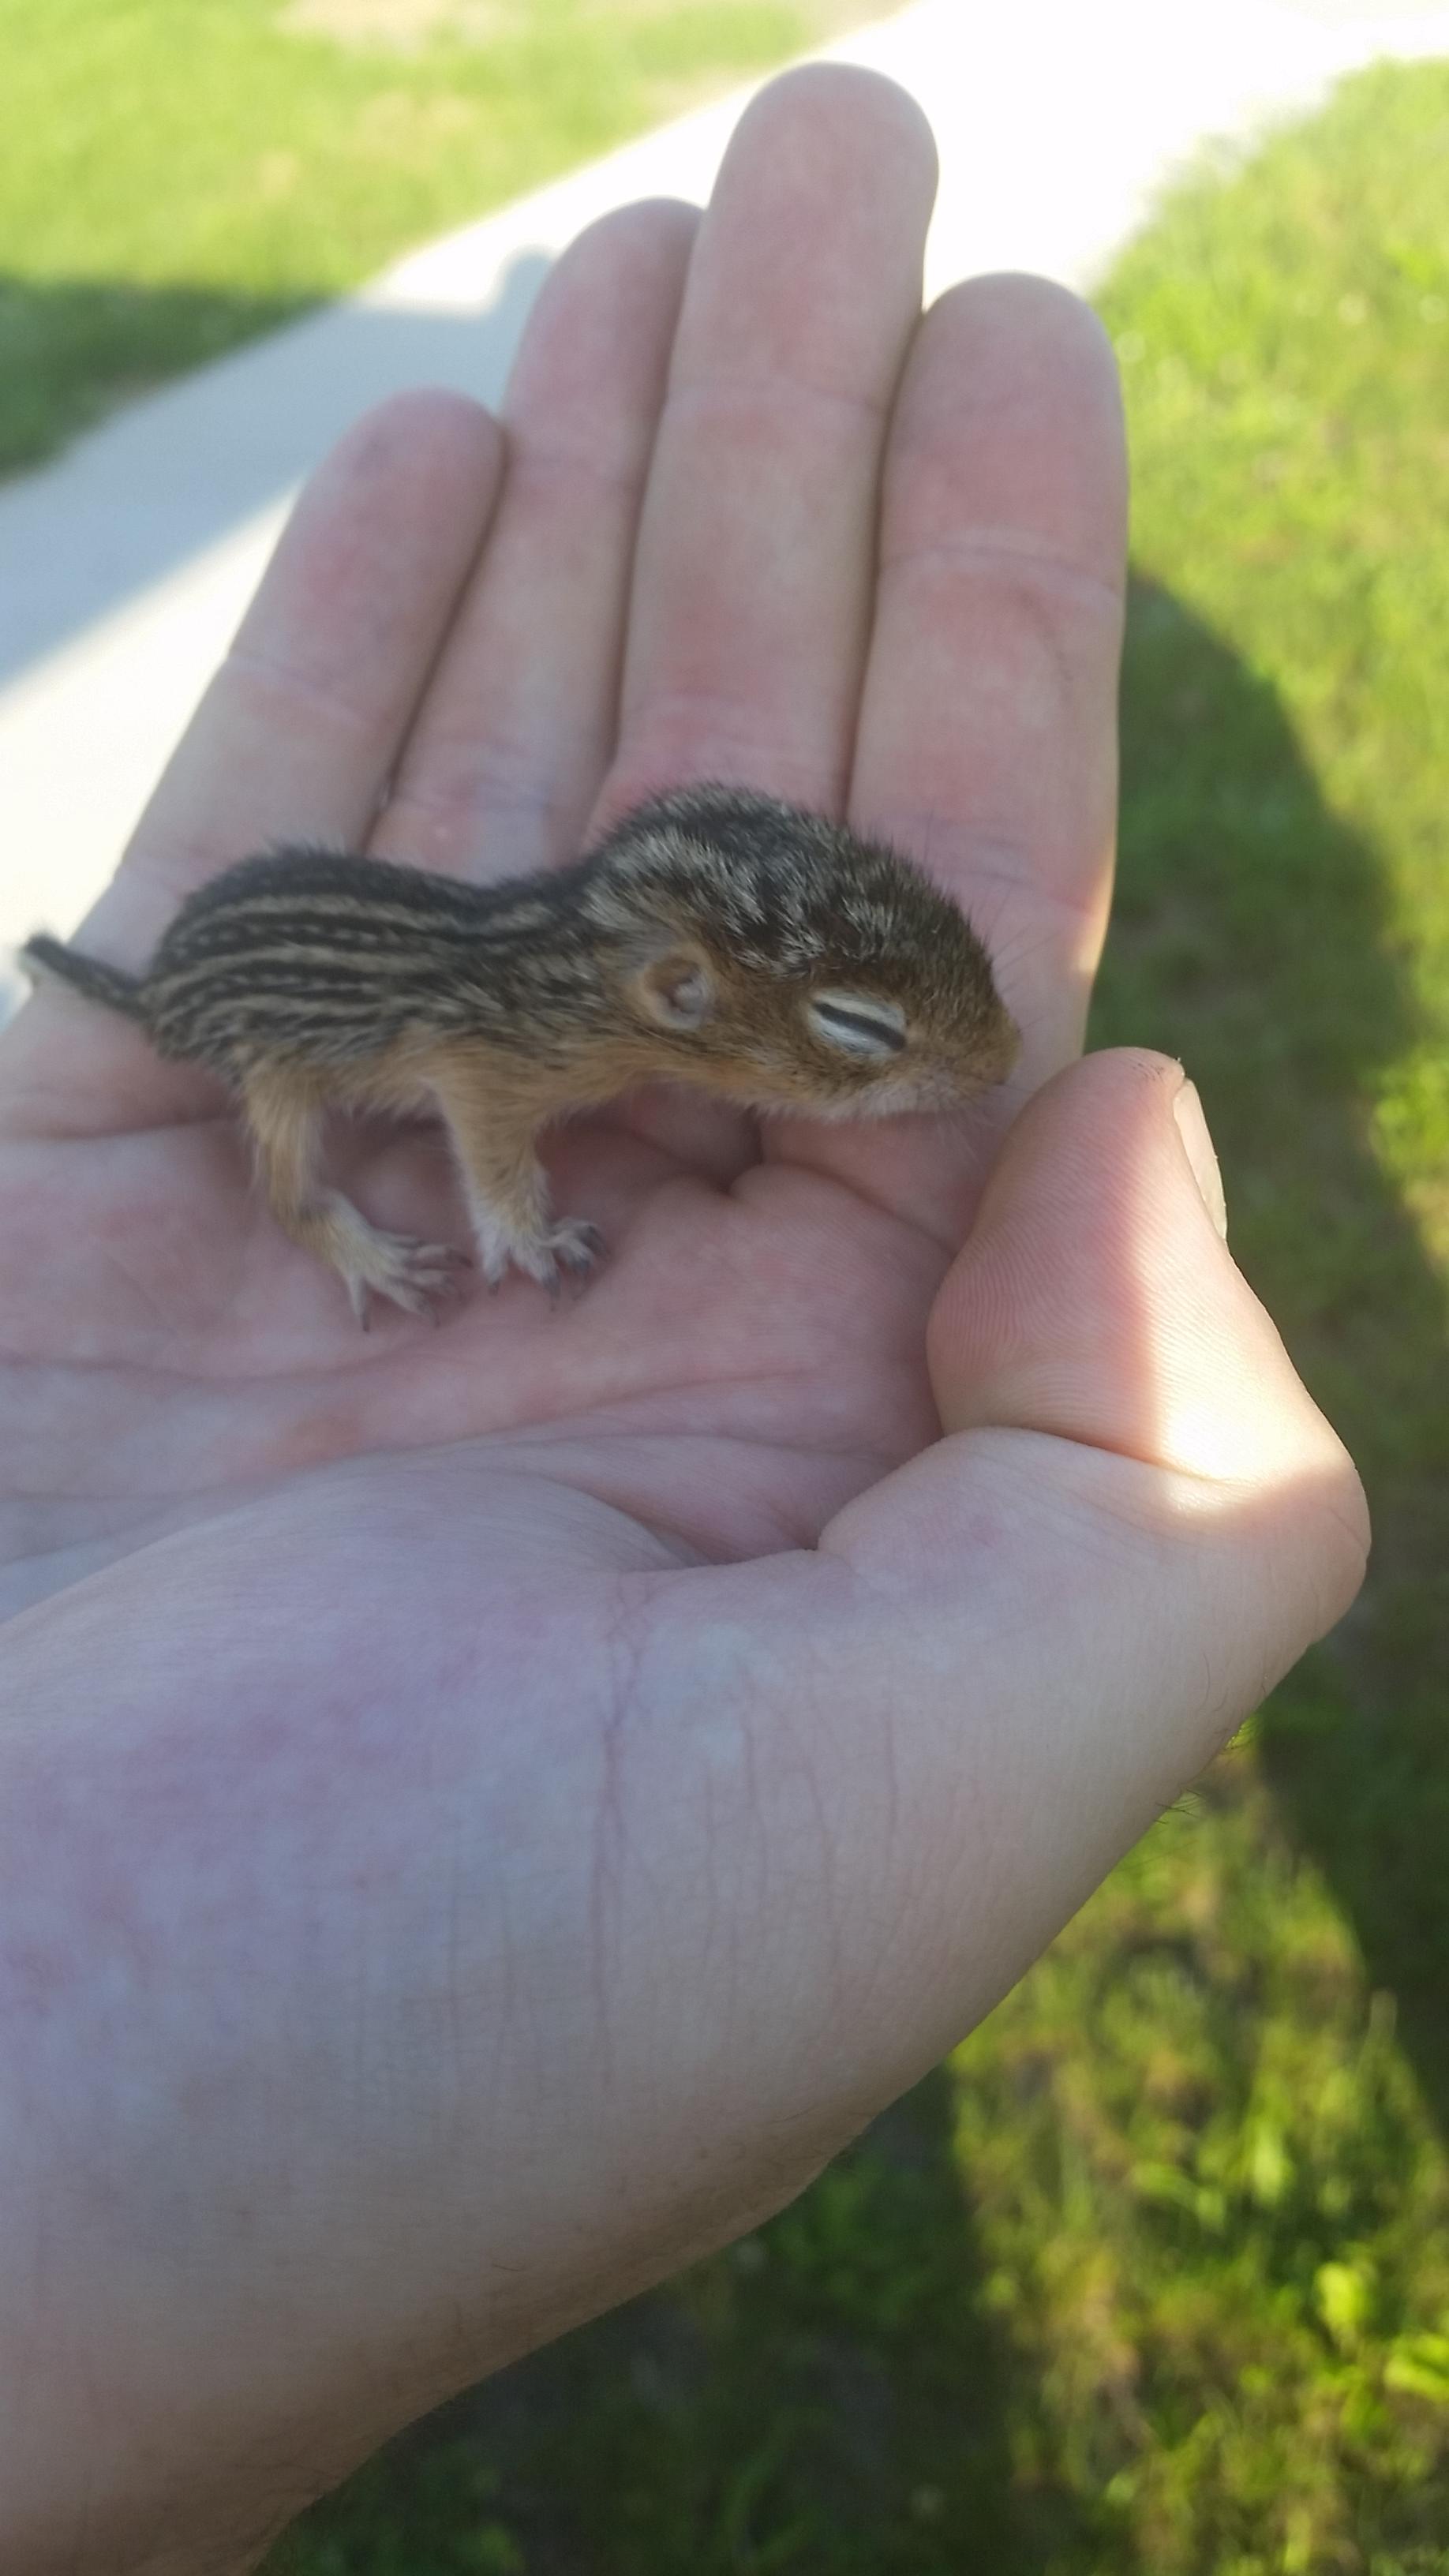 tiny cute small animals